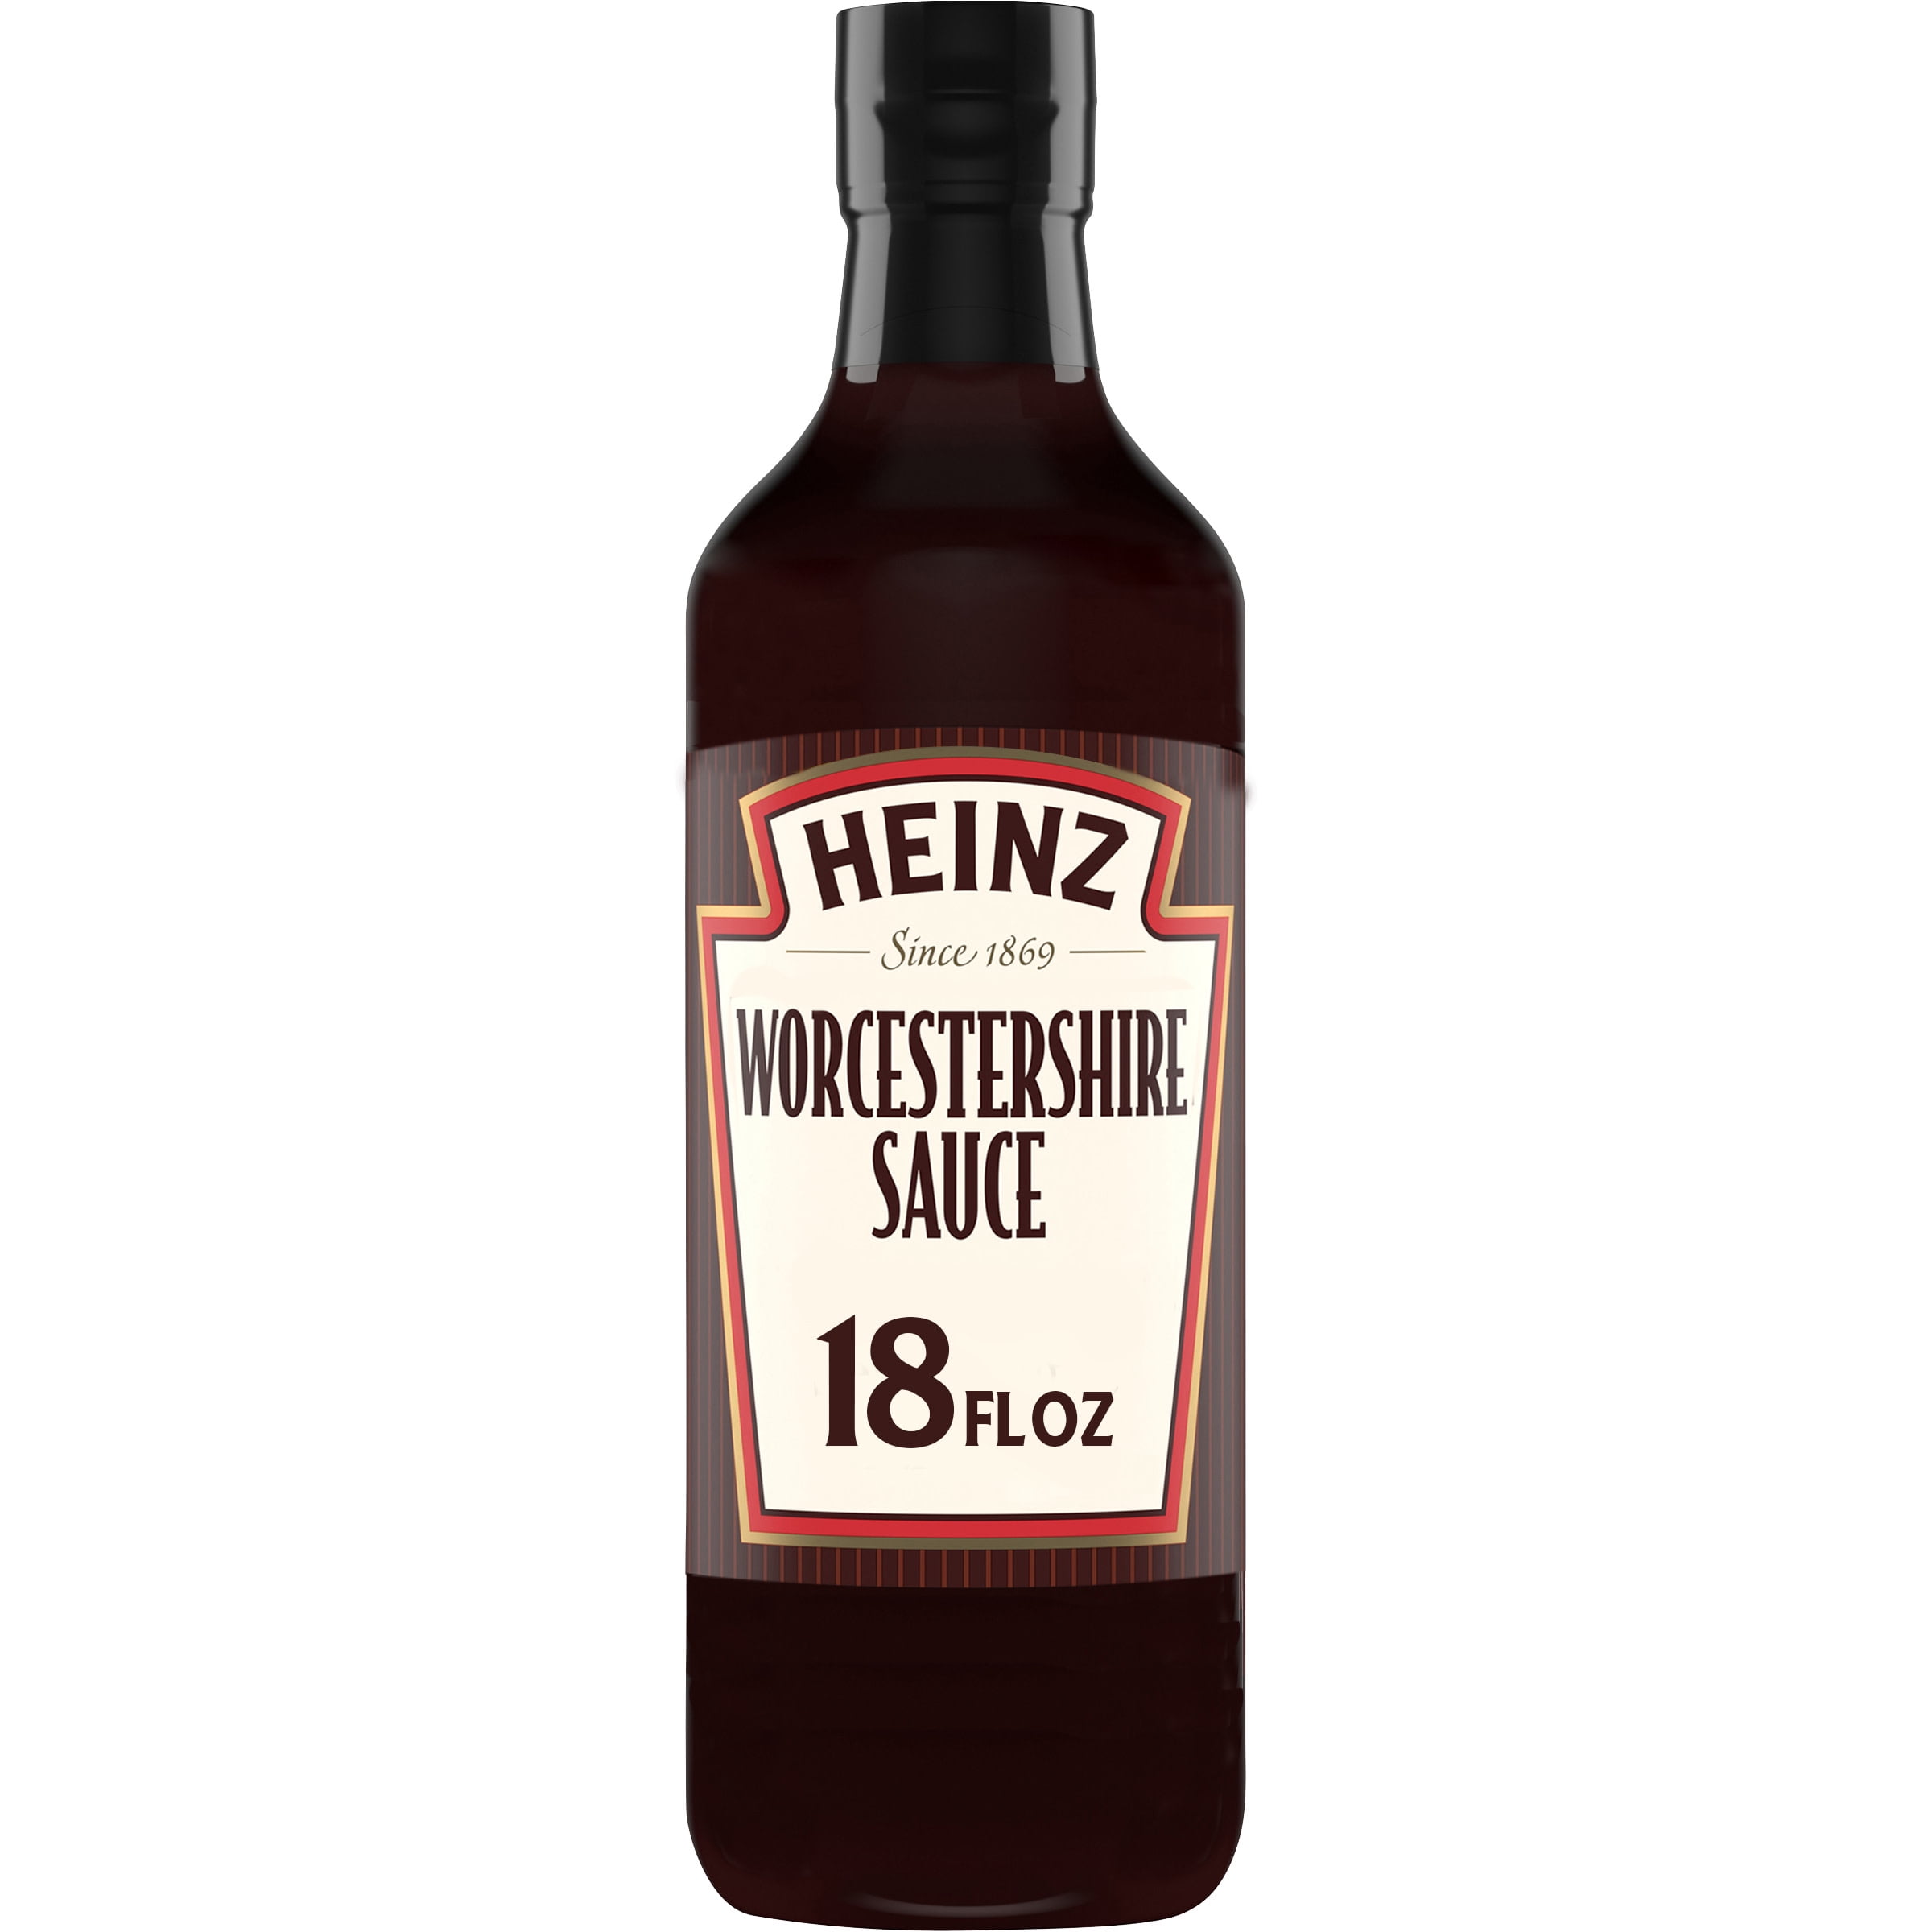 Heinz Worcestershire Sauce, 18 fl oz Bottle